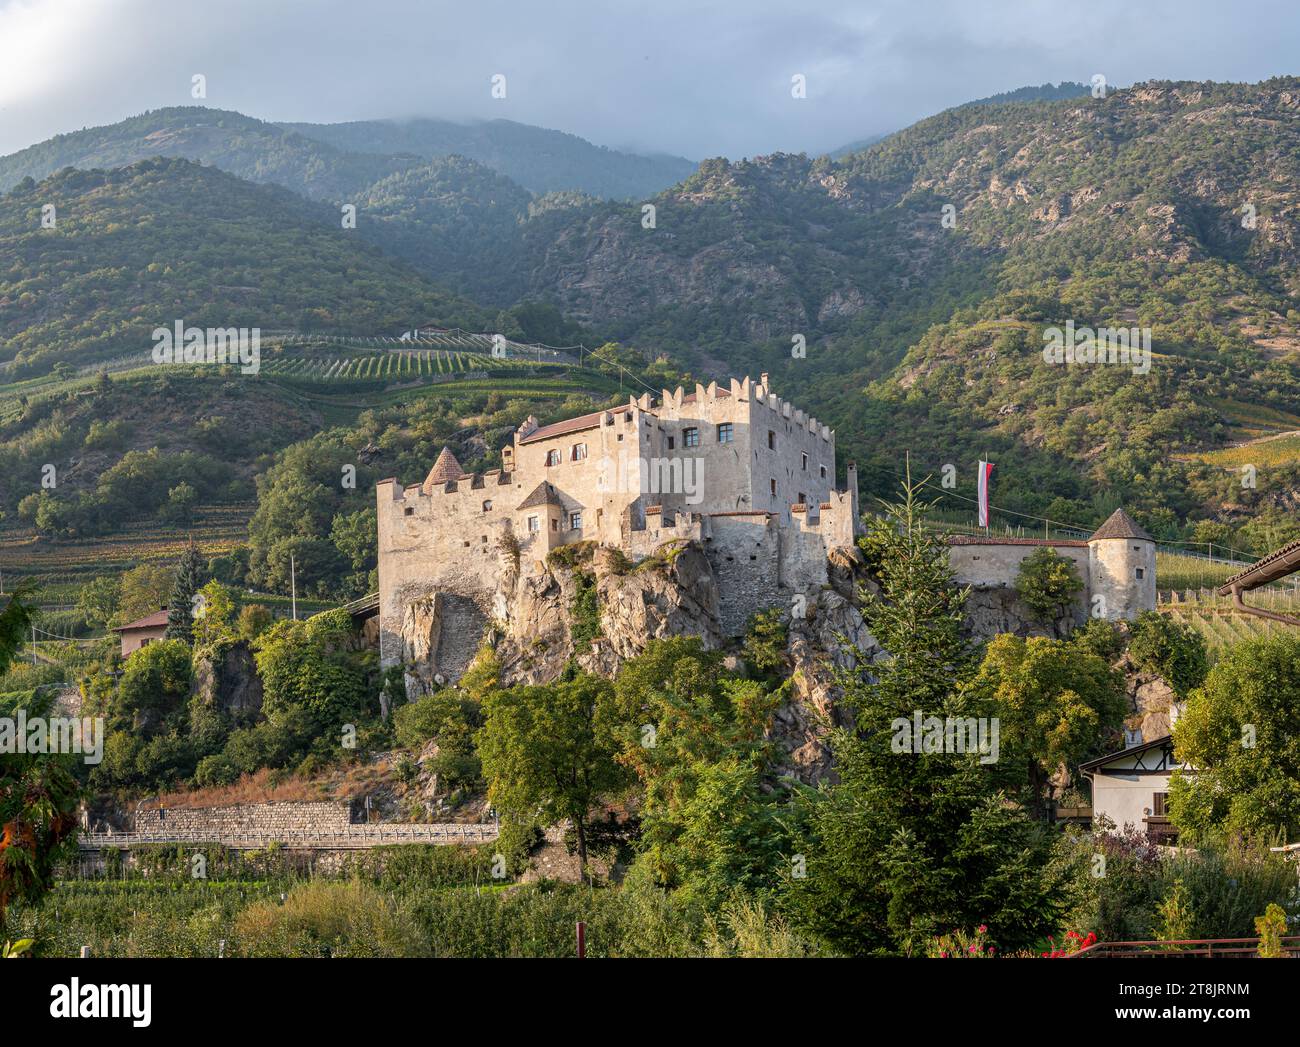 El castillo medieval de Castelbello Ciardes (en alemán: Schloss Kastelbell), Tirol del Sur, Trentino Alto Adige Südtirol, Italia Foto de stock